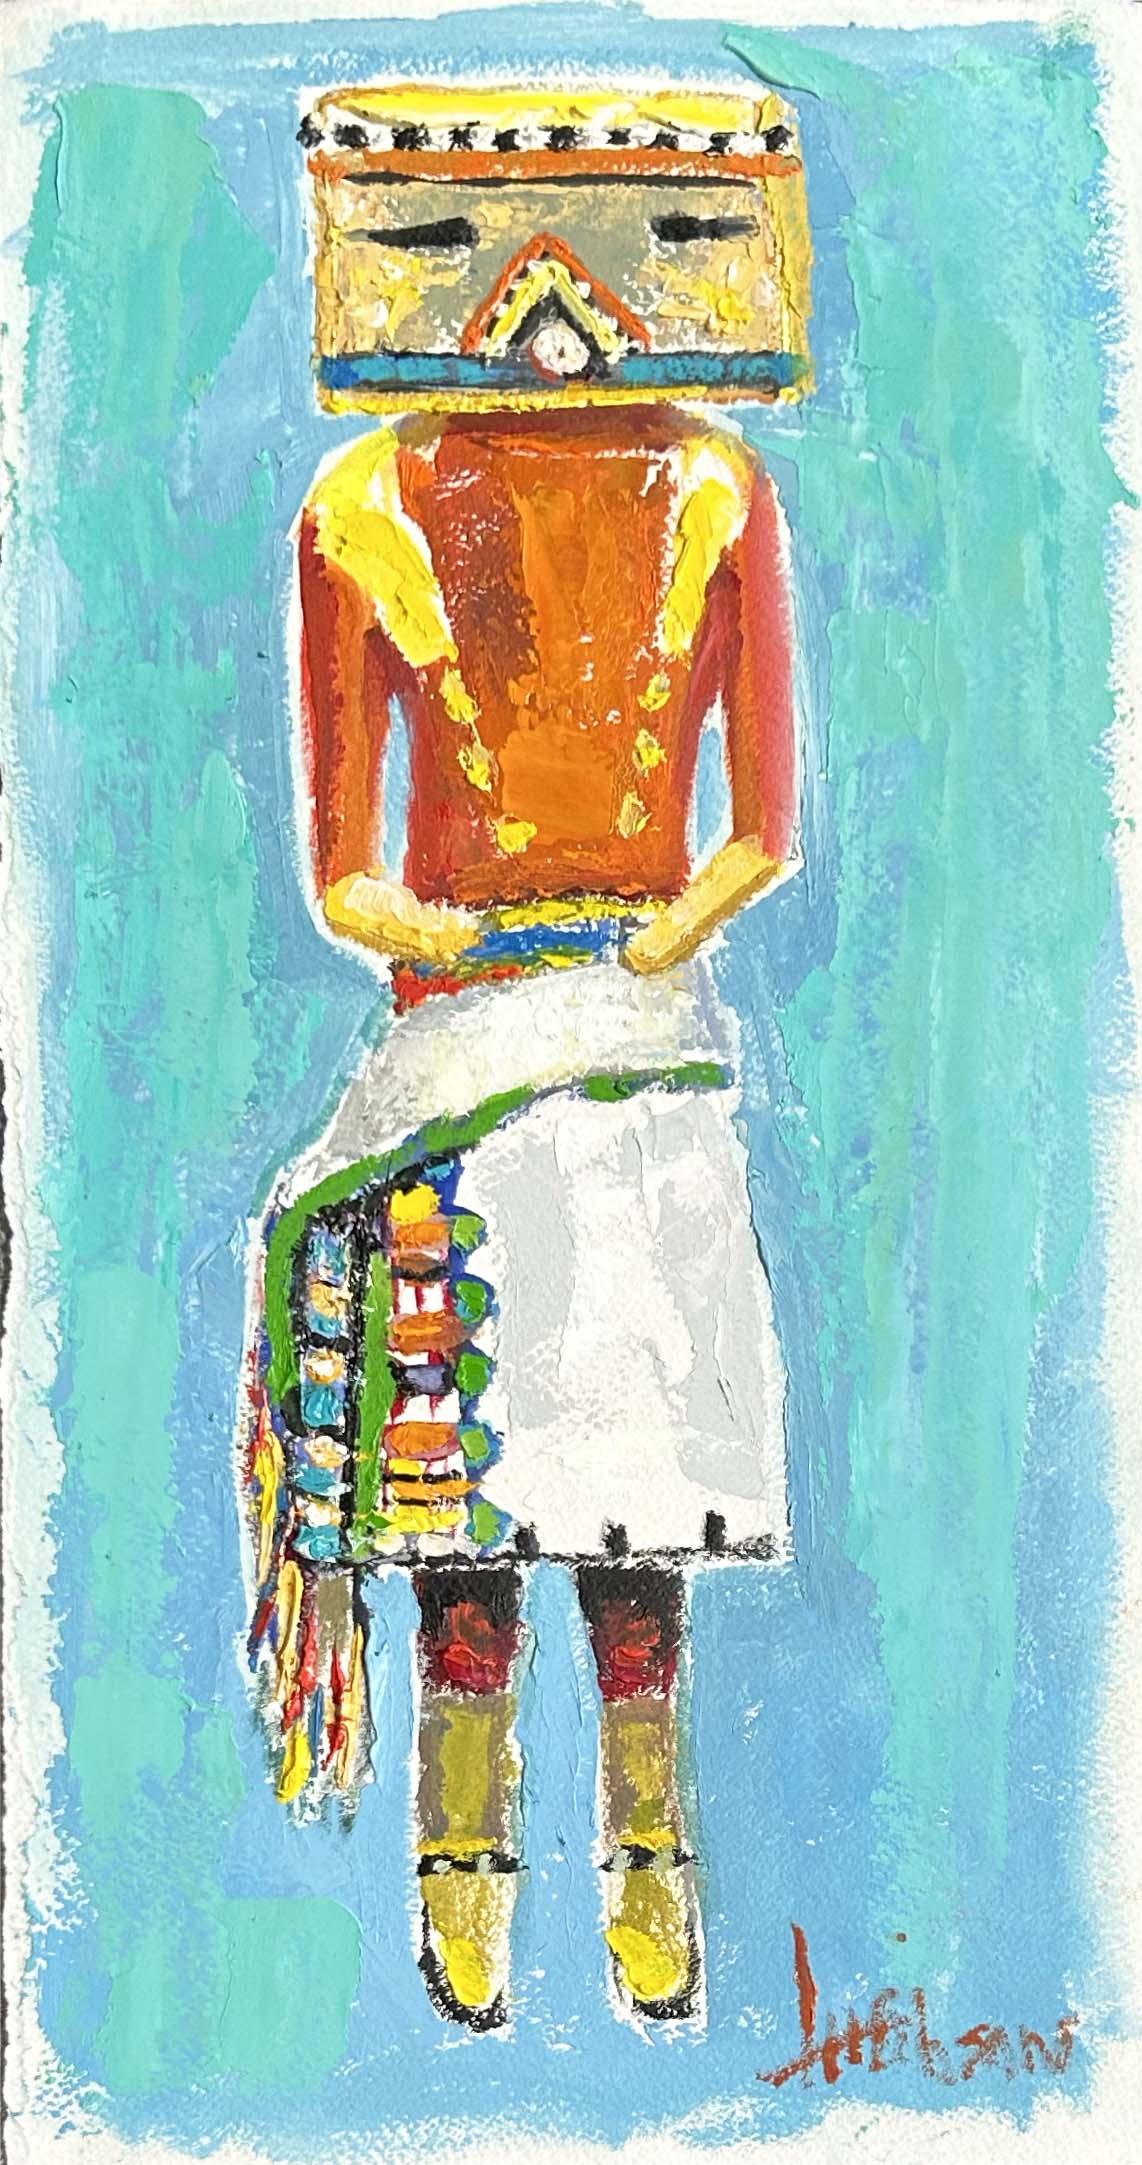 Kachina Doll with Colorful Sash